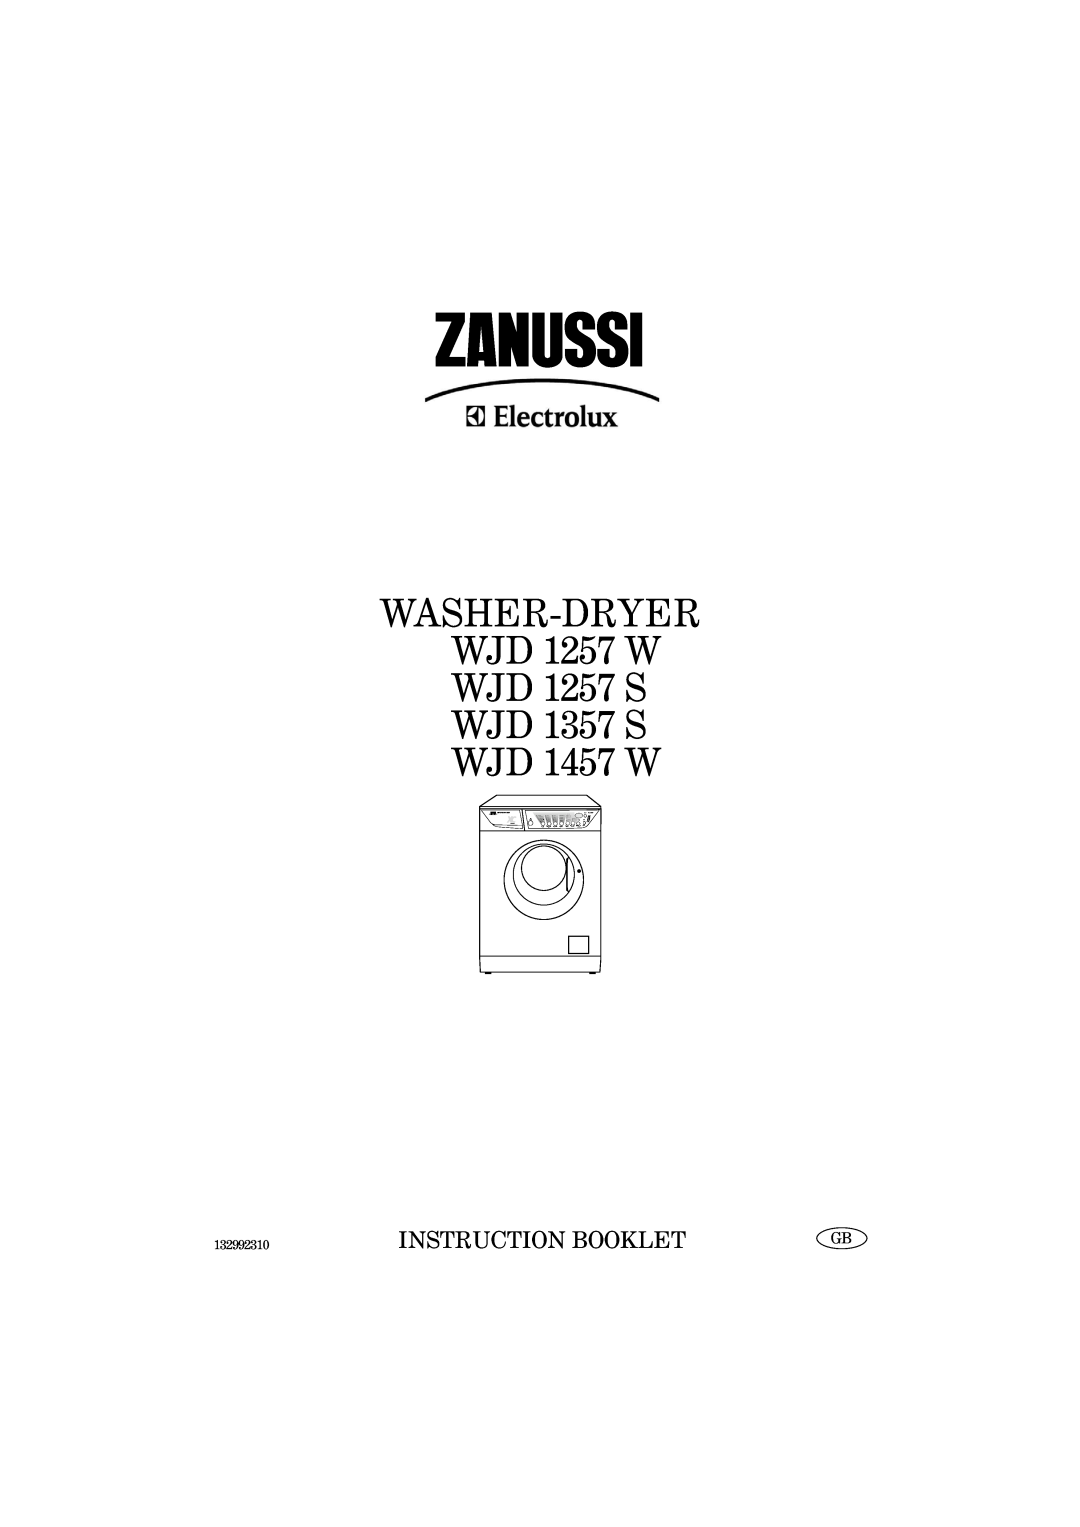 Zanussi manual WASHER-DRYER WJD 1257 W WJD 1257 S WJD 1357 S WJD 1457 W, Instruction Booklet, 132992310, Jetsystem 